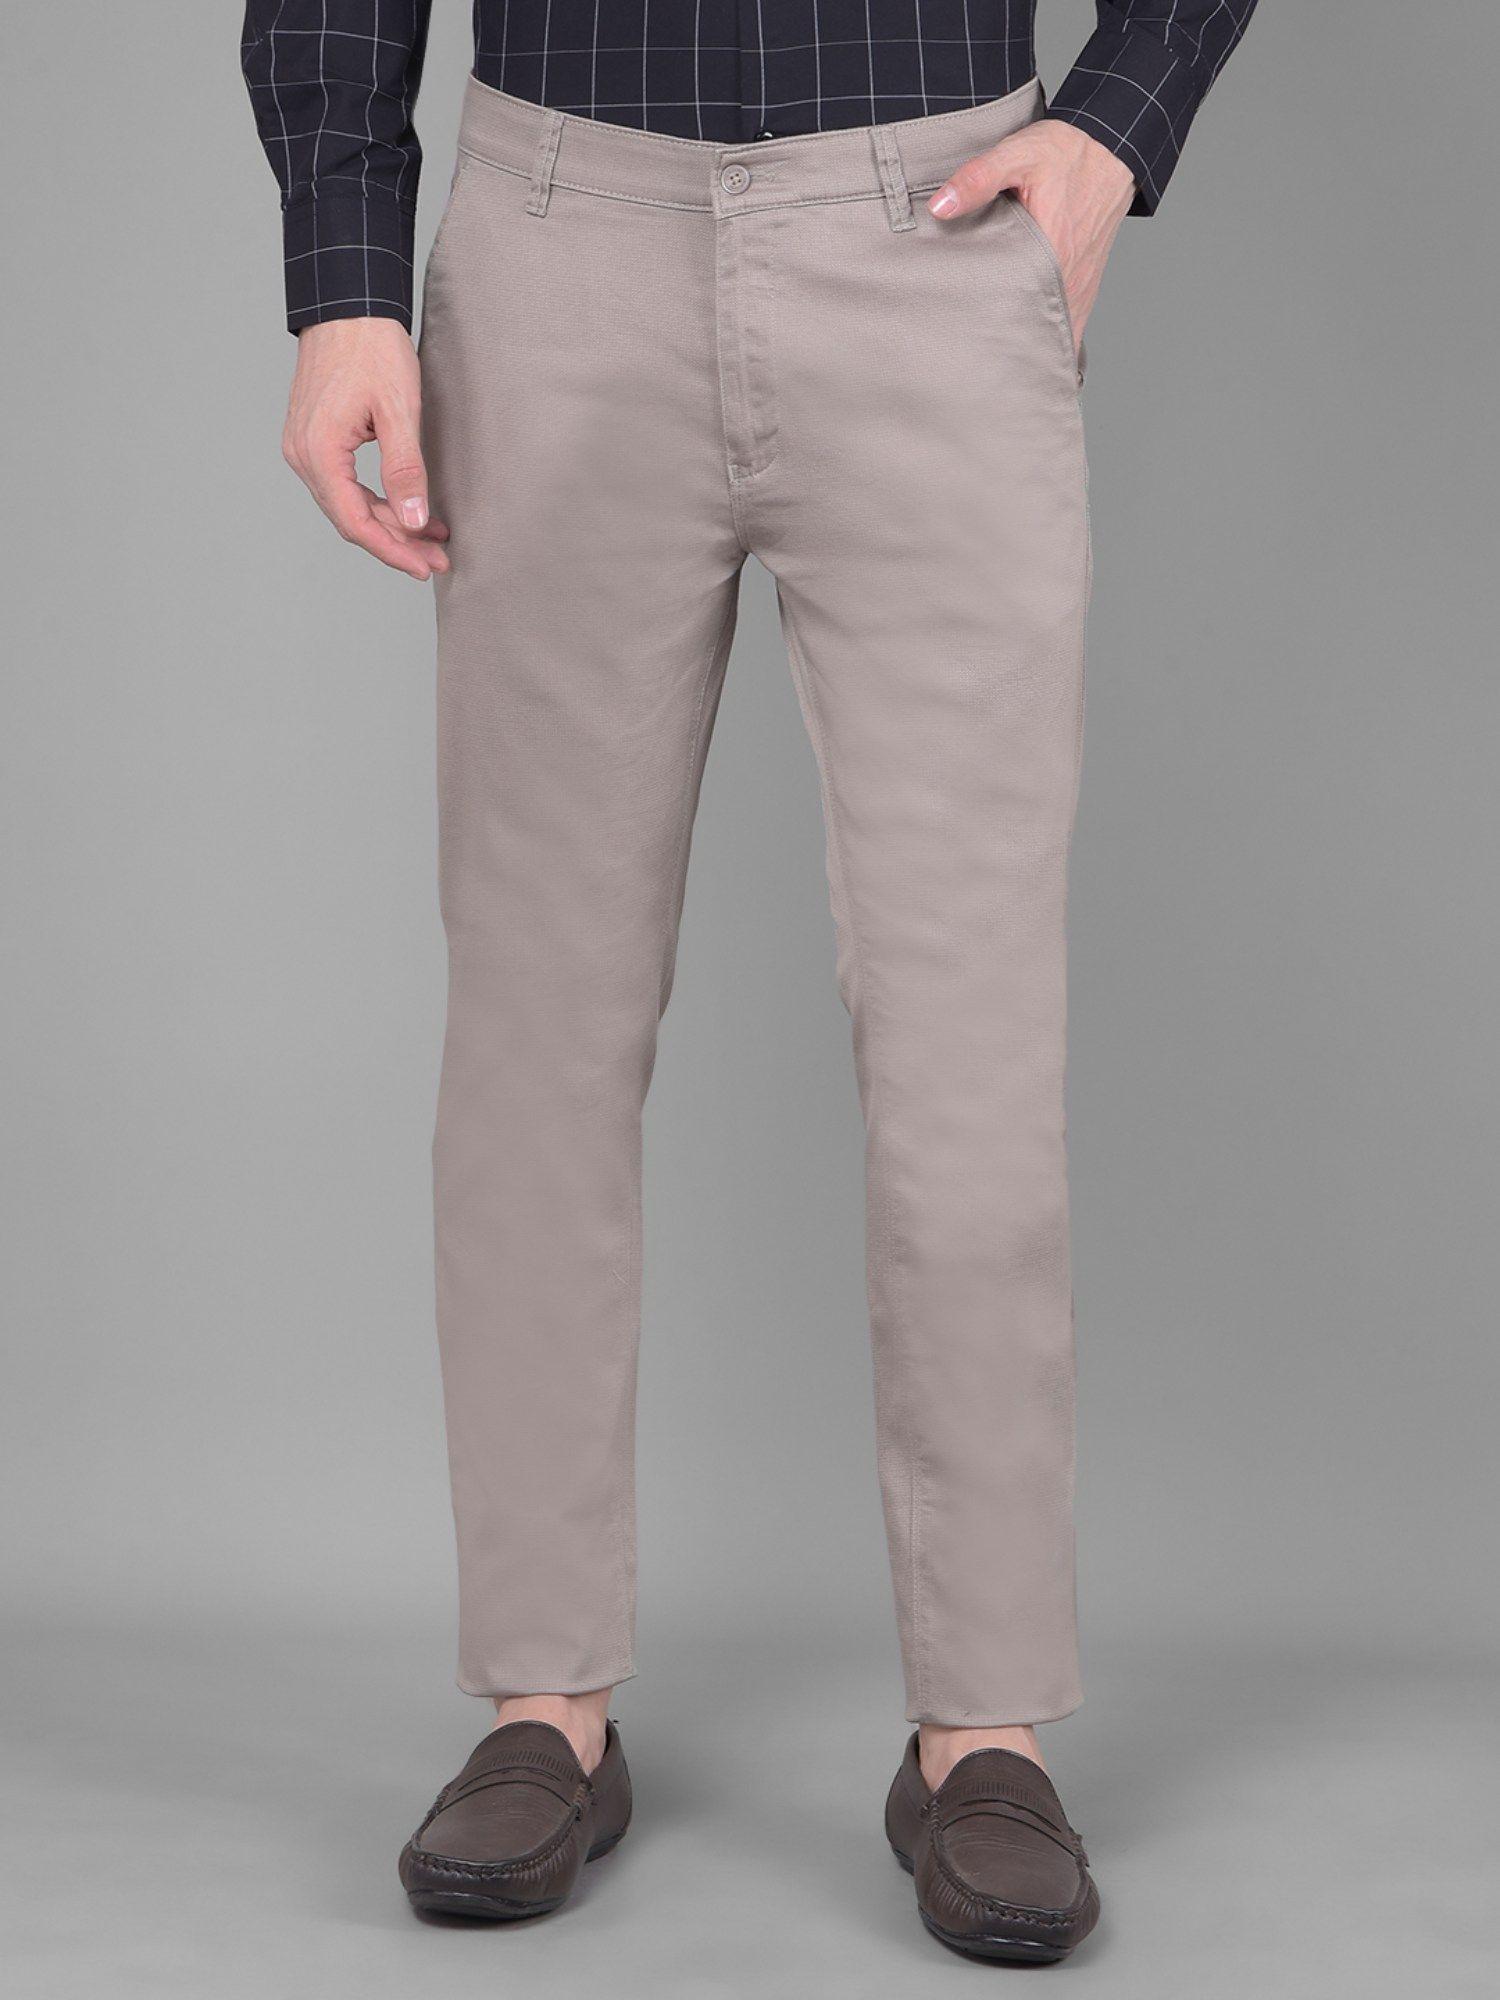 Mens Grey Self Design Trouser